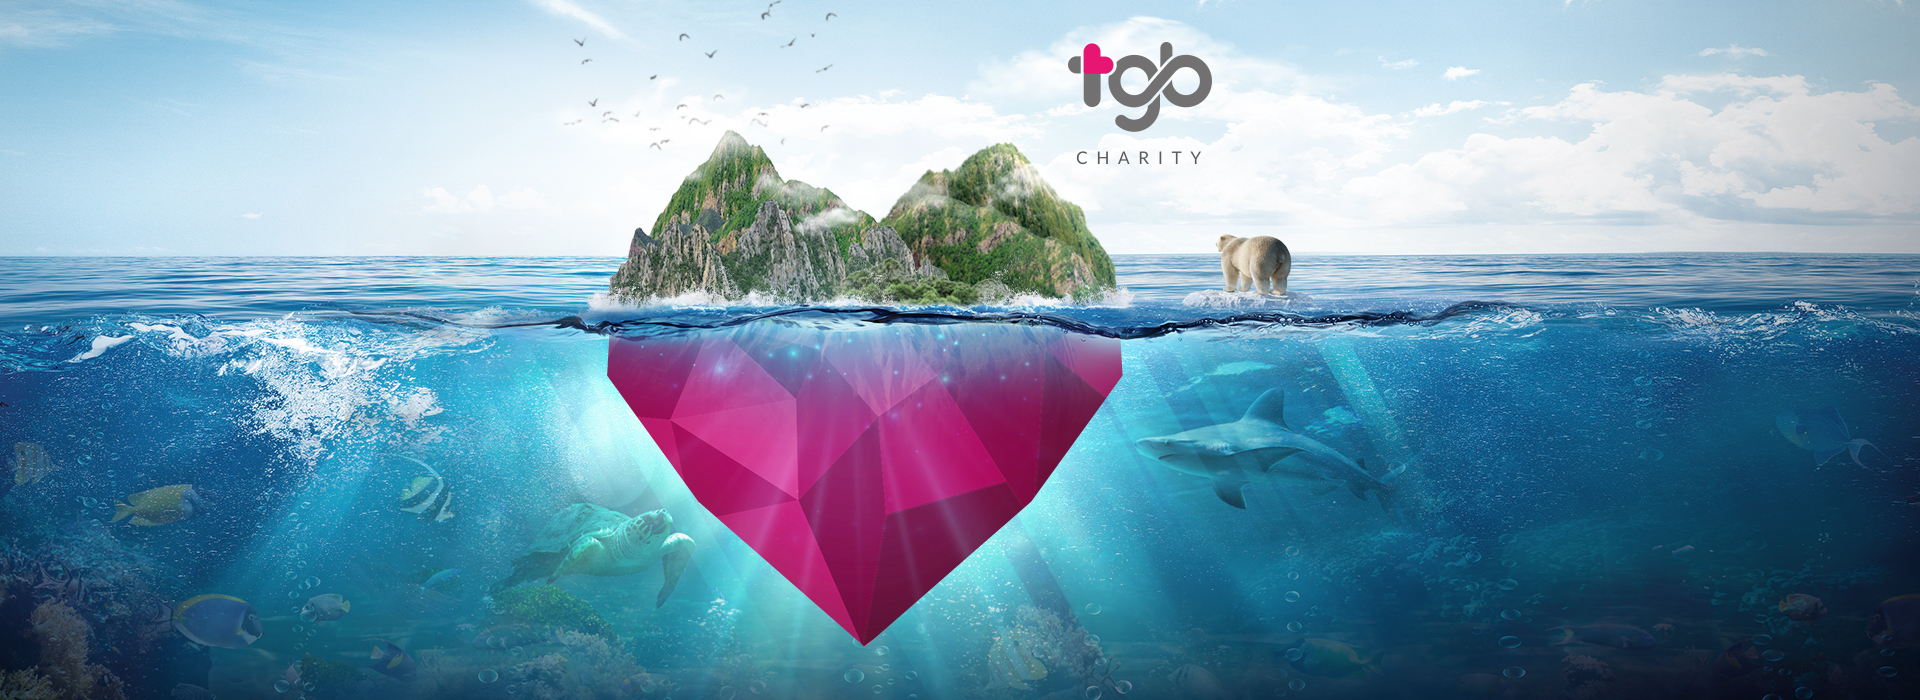 保护地球上的各种生物 - TGB Charity